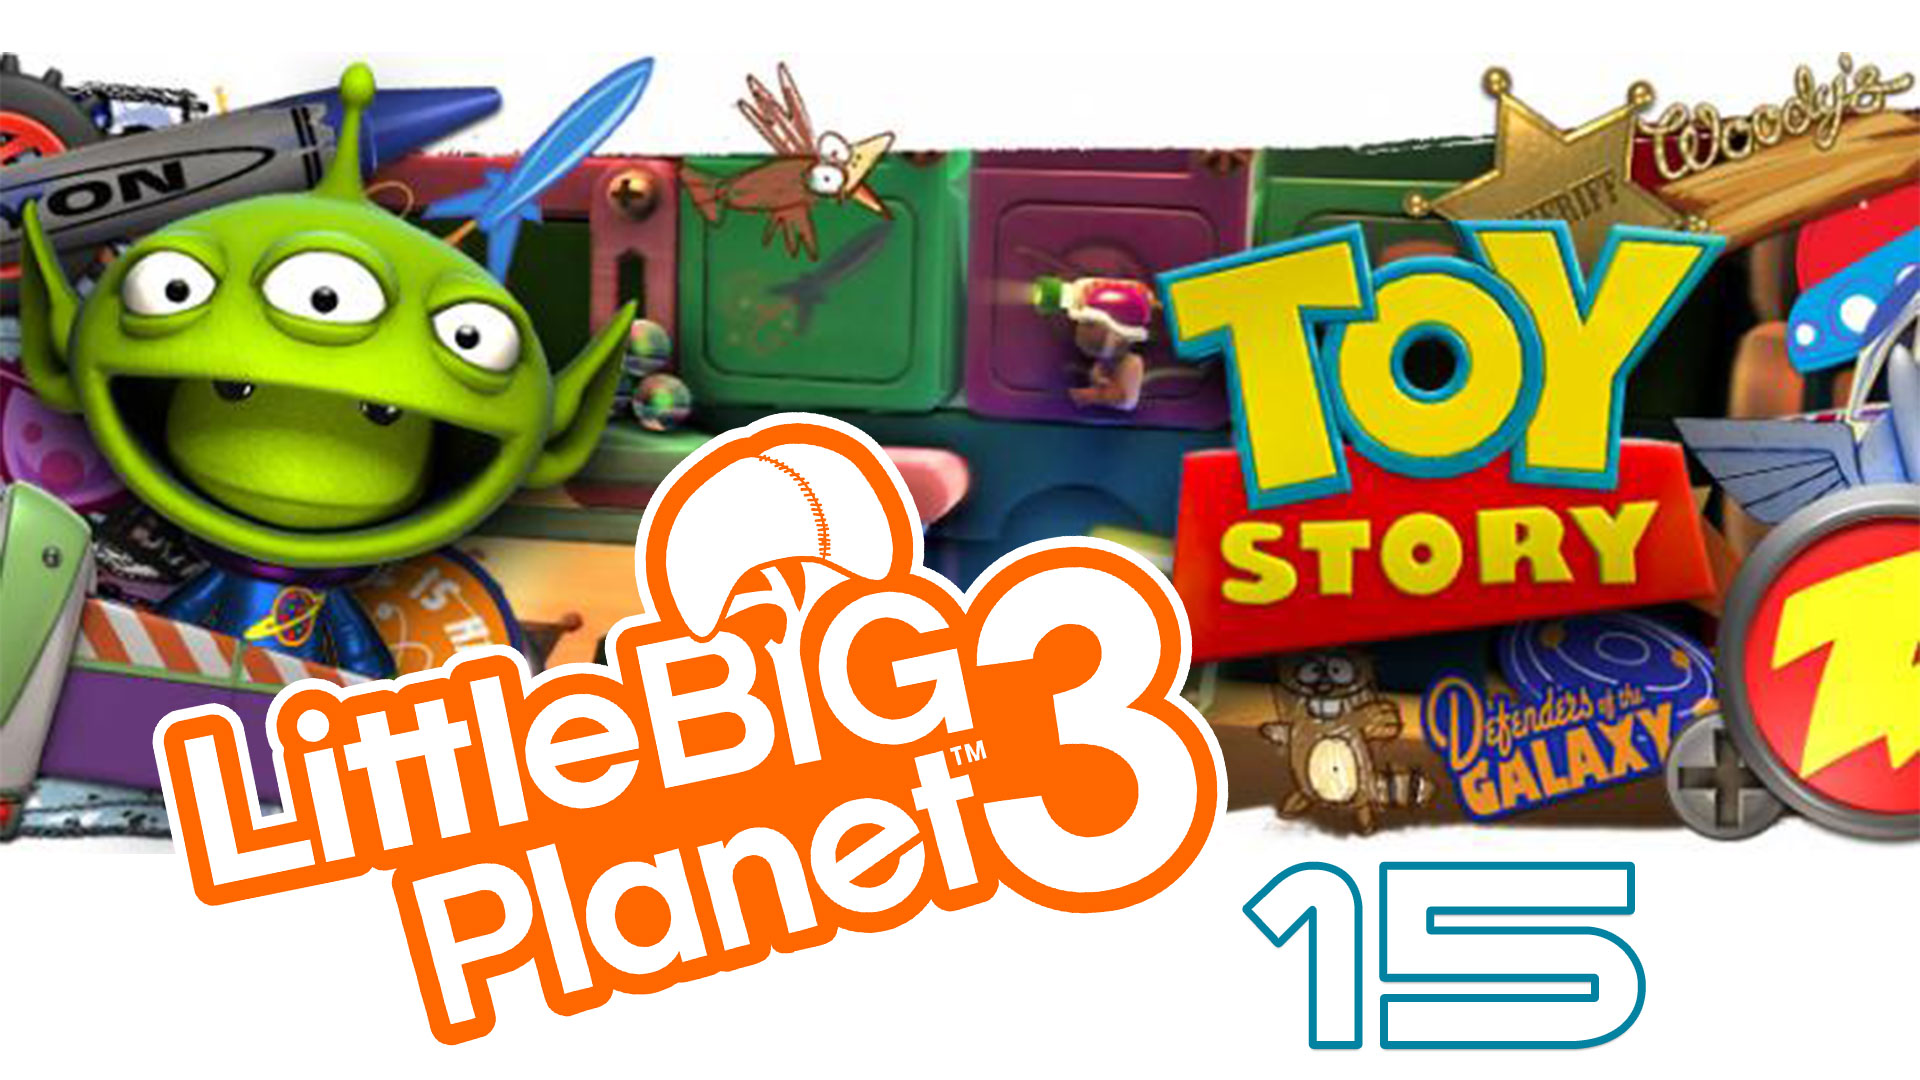 LittleBigPlanet 3 - Сезон 2 - Кооператив - История игрушек ч. 6 - Прохождение [#15] | PS4 (2016 г.)